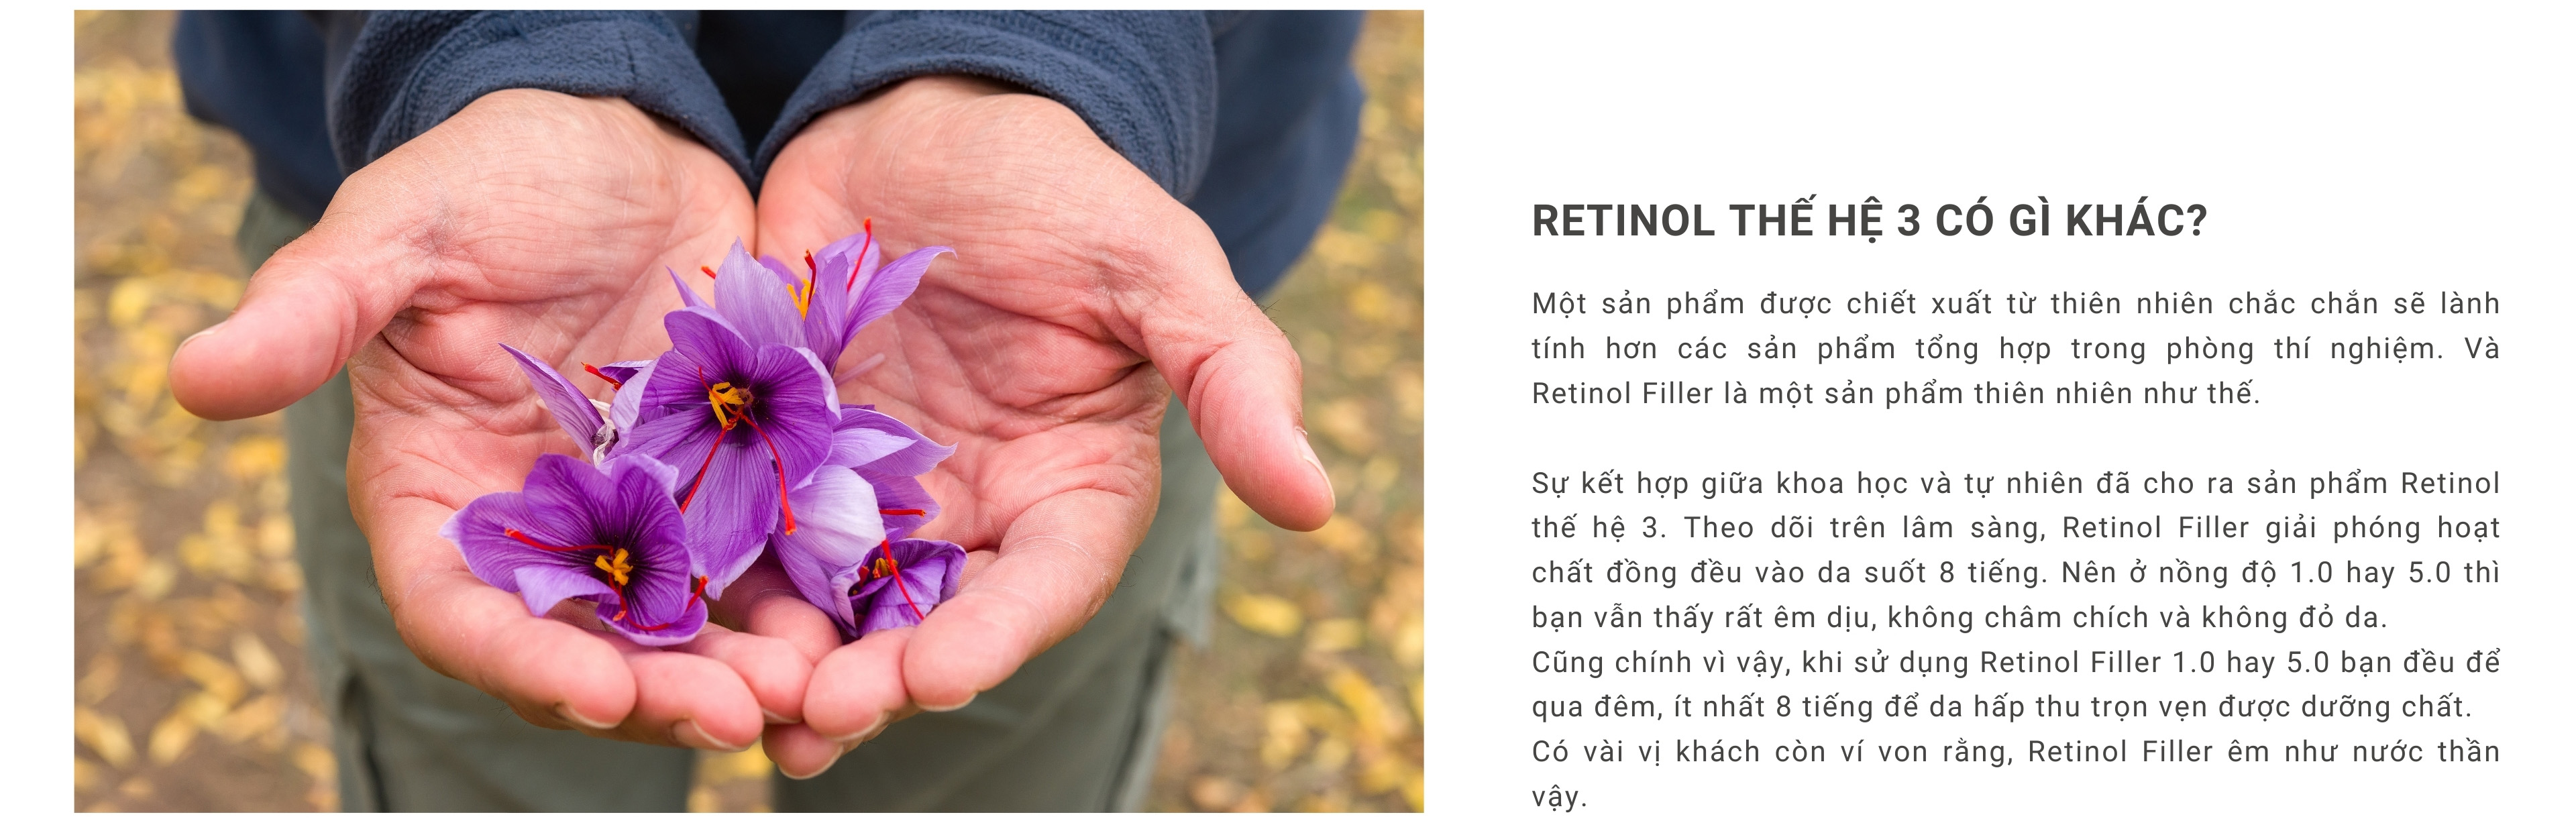 Retinol Filler là retinol thế hệ 3, êm dịu nhất